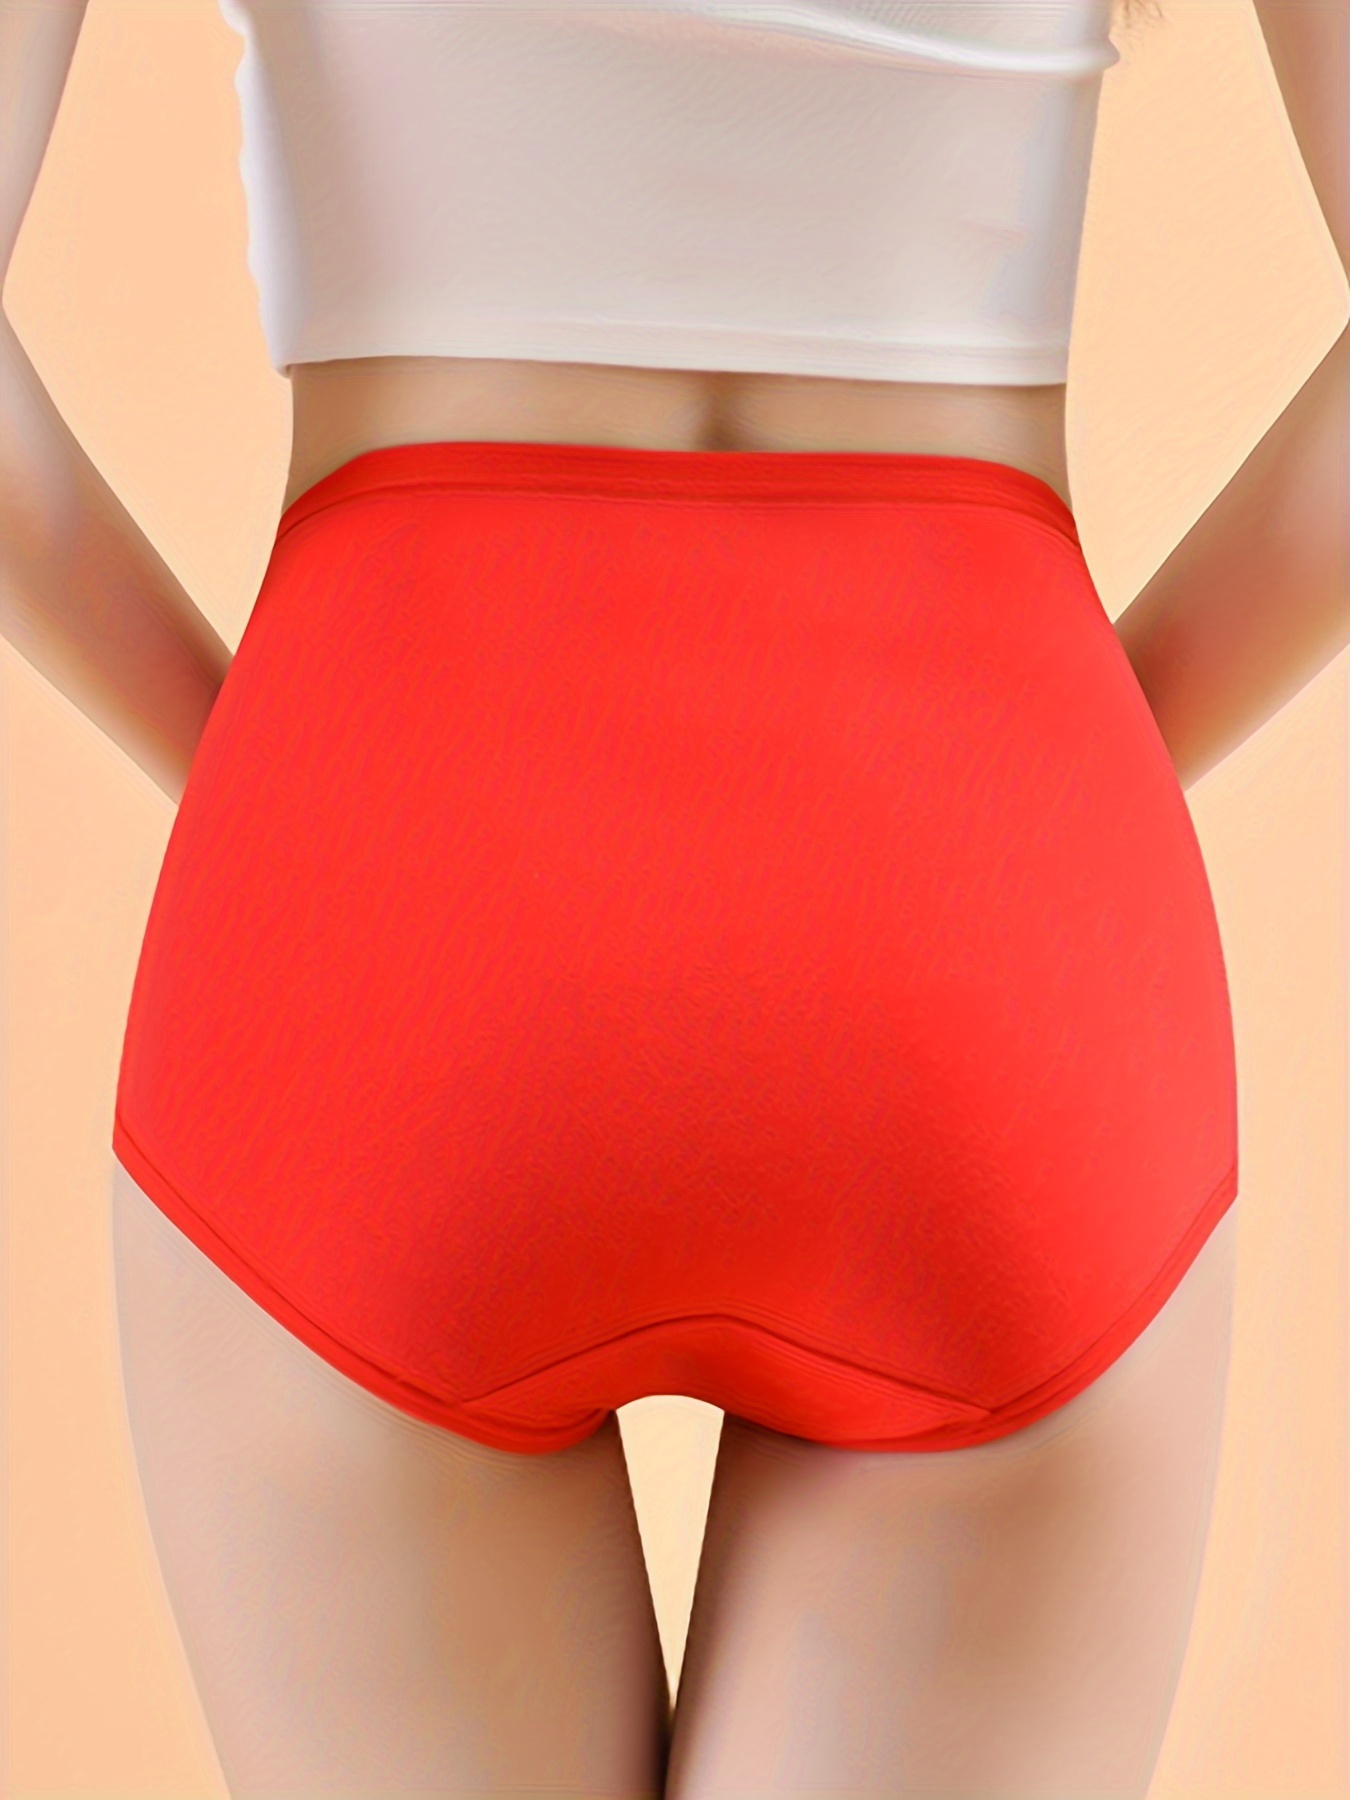 New Year's high-waist animal year big red underwear for women